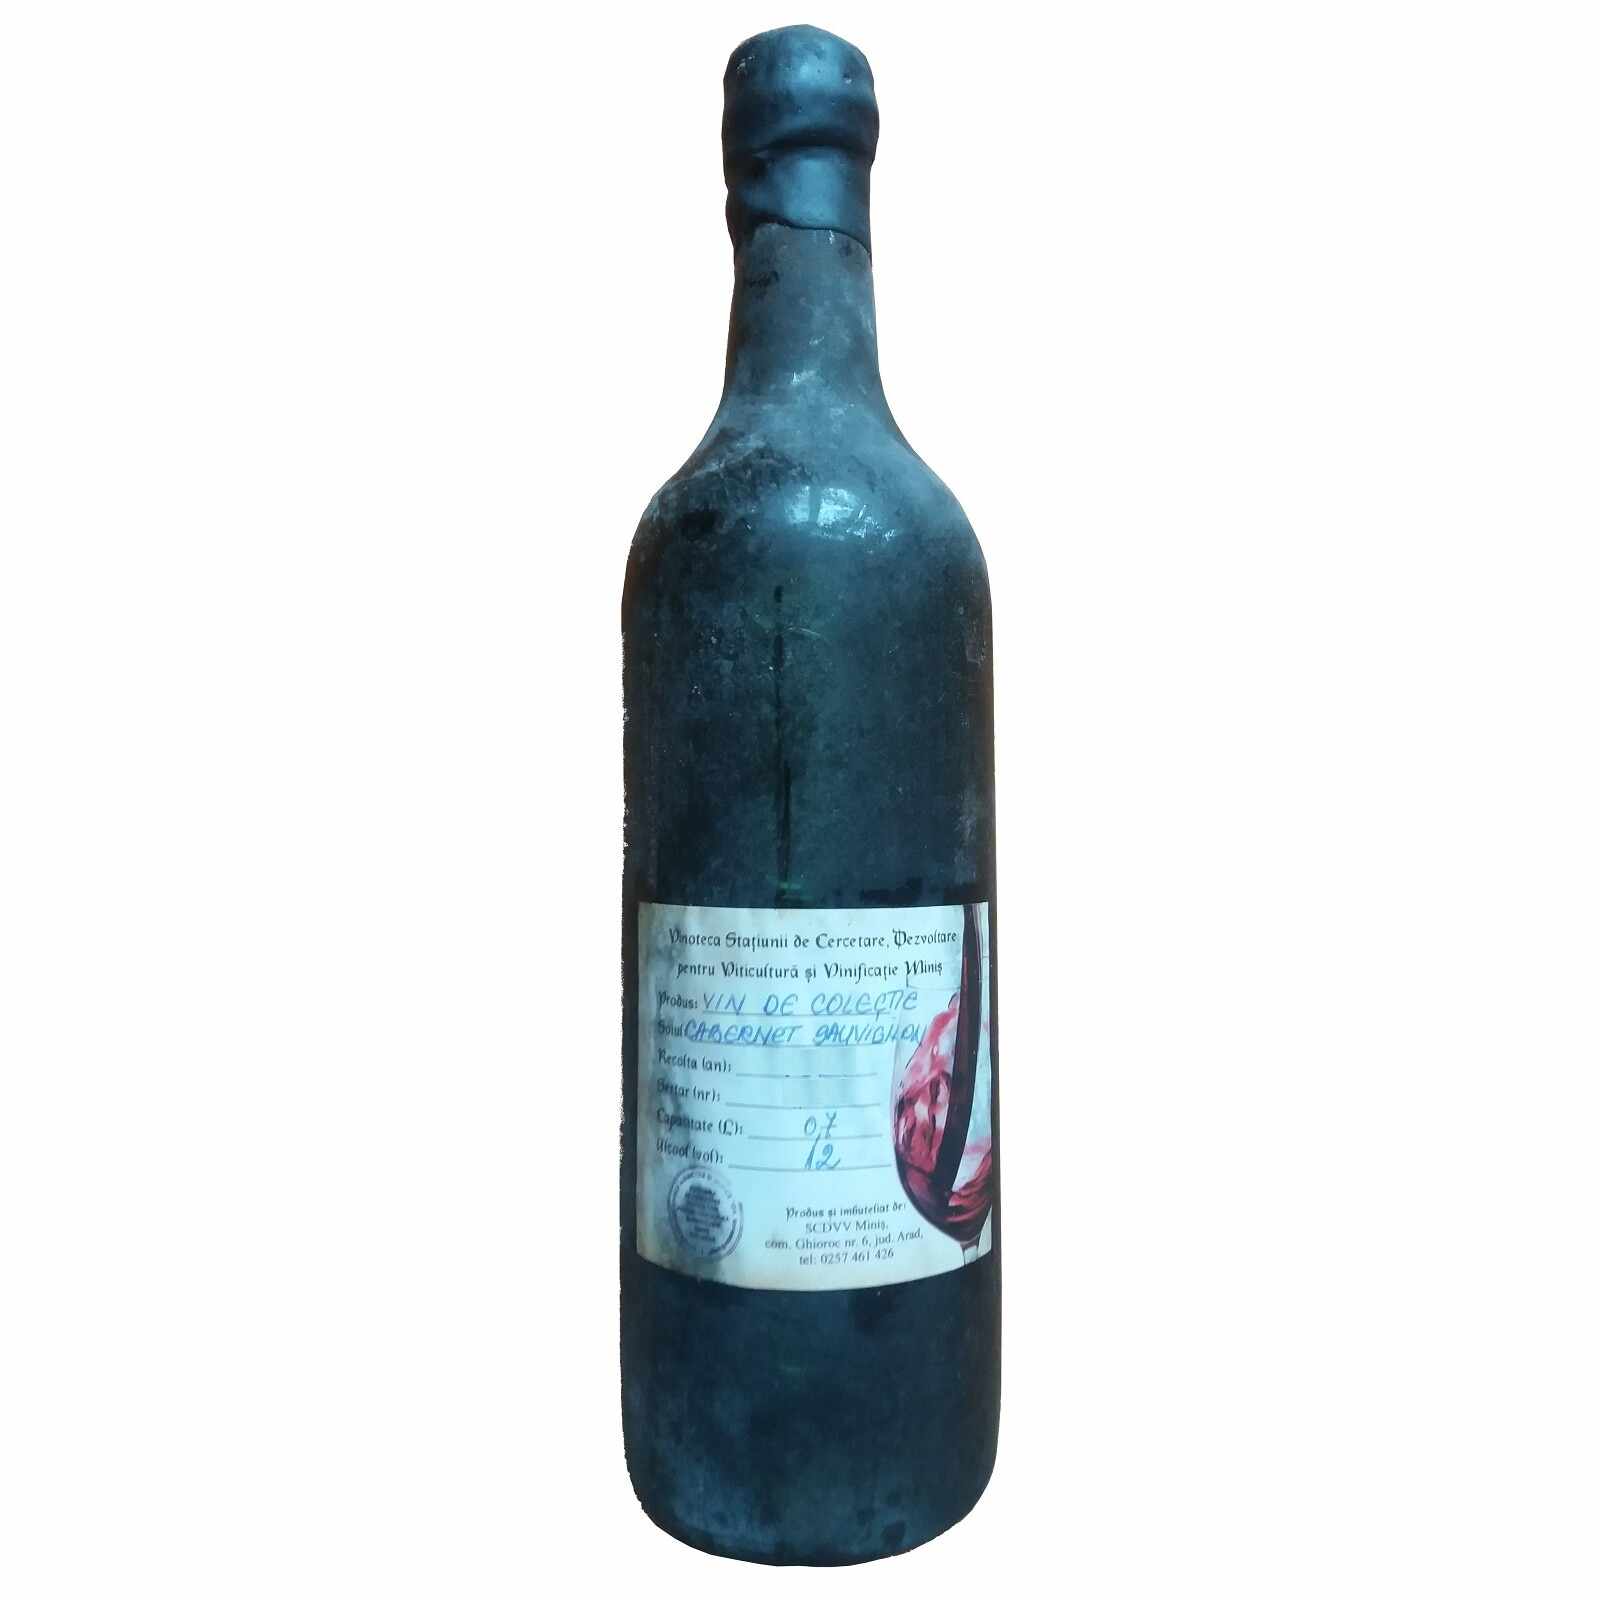 Vin de colectie Minis Cabernet Sauvignon 1987 rosu, in cutie lemn, 0.7L